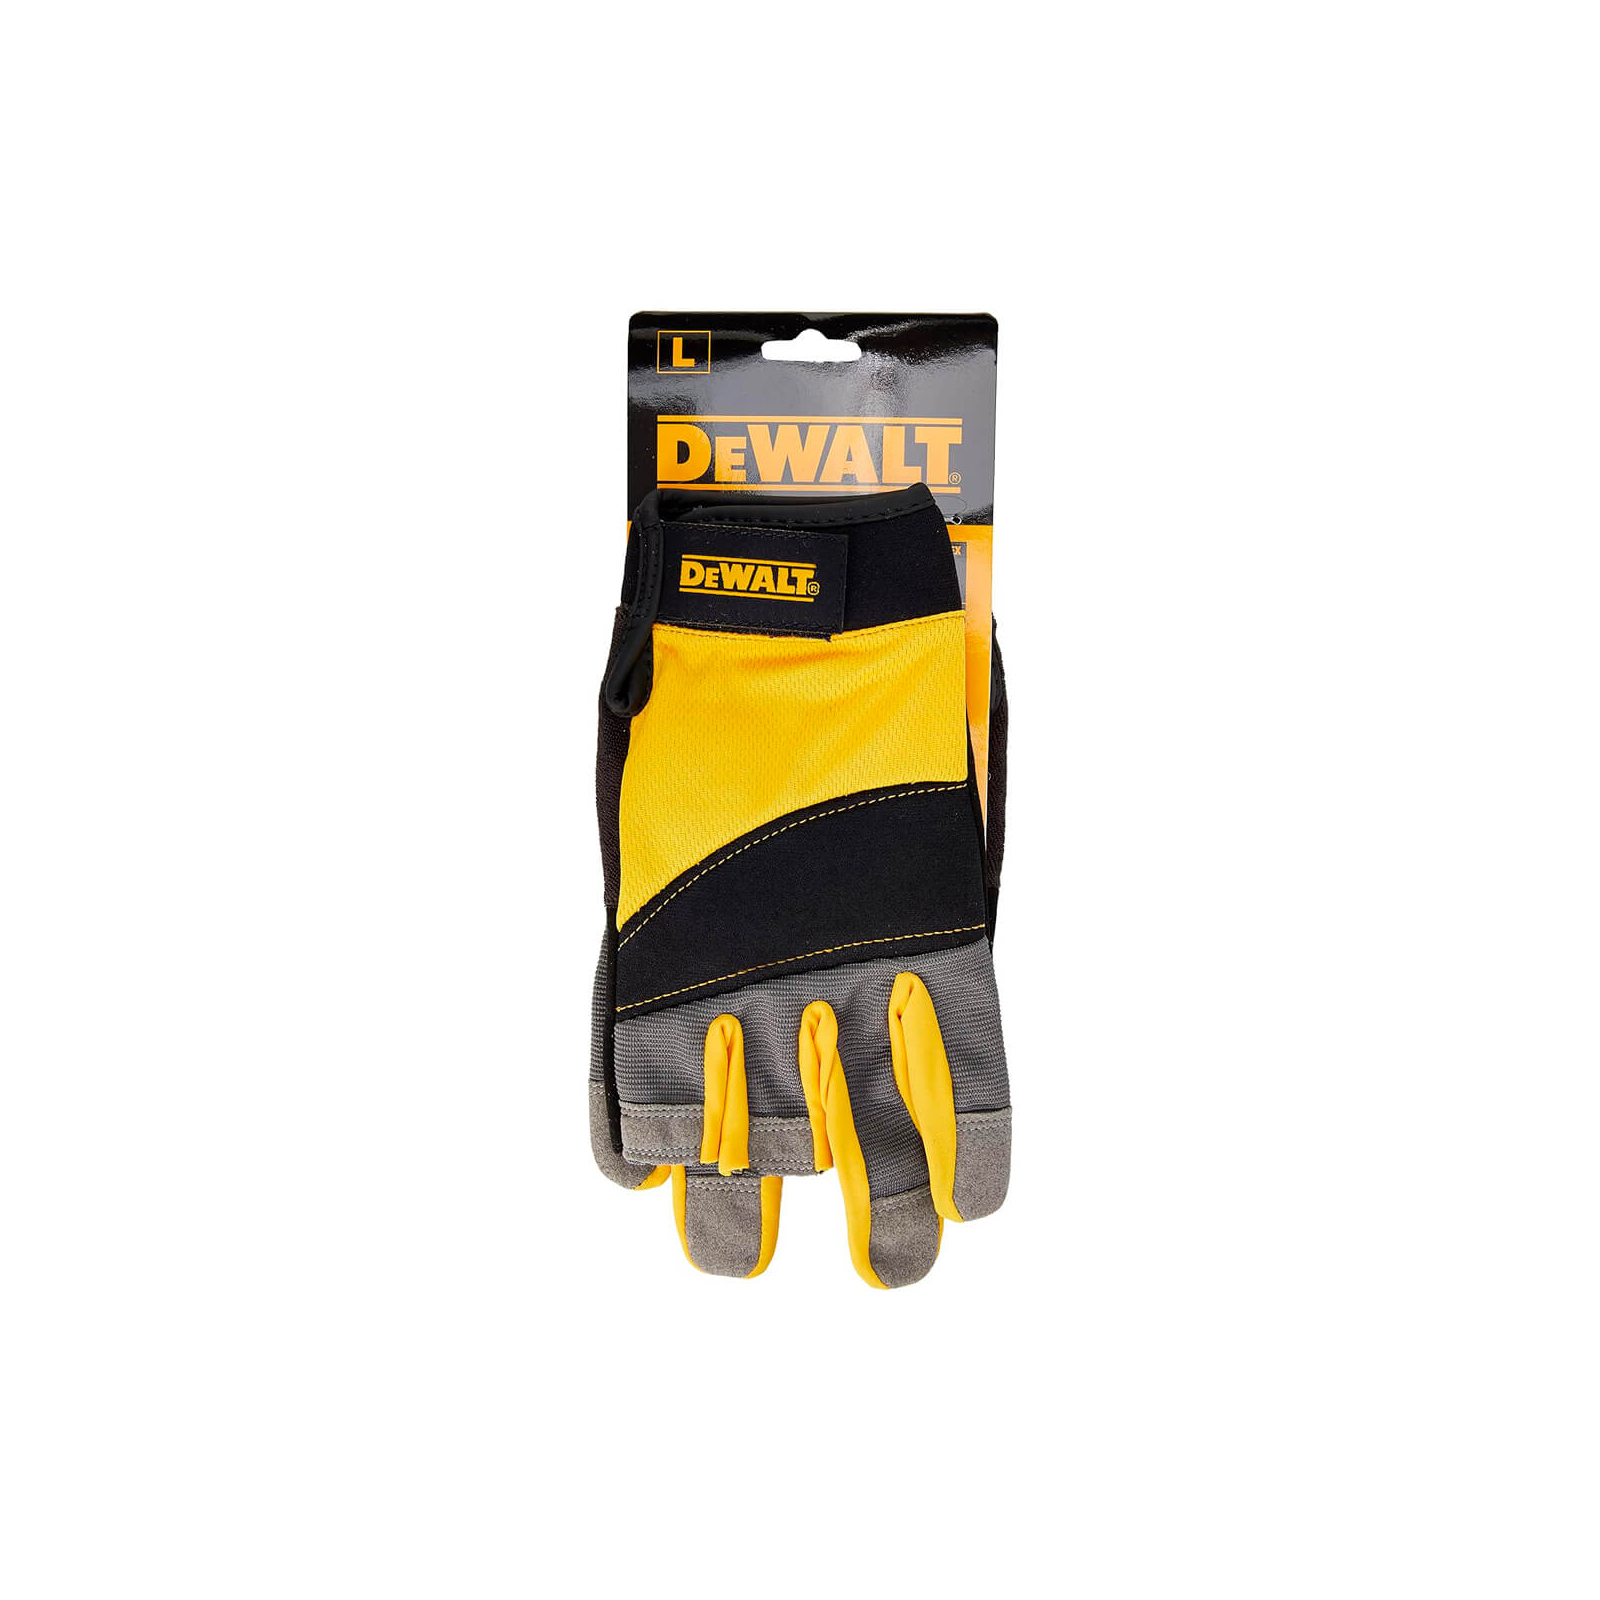 Защитные перчатки DeWALT частично открытые, разм. L/9, с накладками на ладони (DPG214L) изображение 2